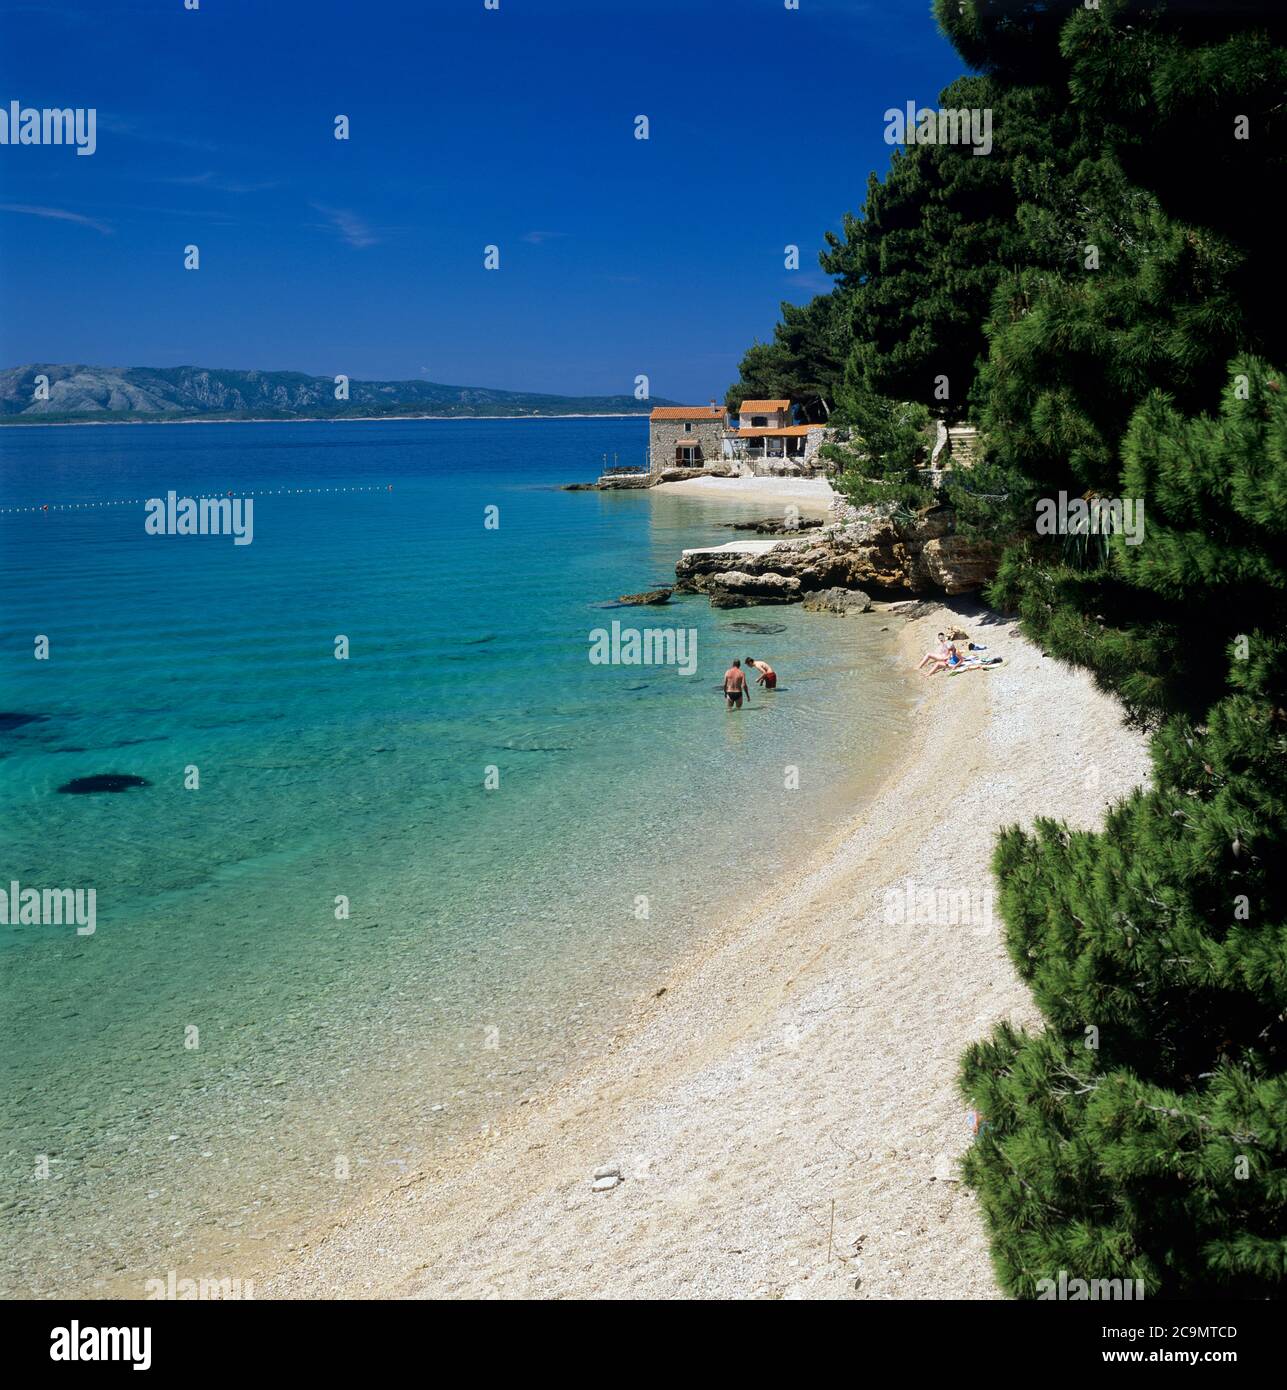 Plage de galets calme avec eau turquoise, bol, île de Brac, Dalmatie, Croatie, Europe Banque D'Images